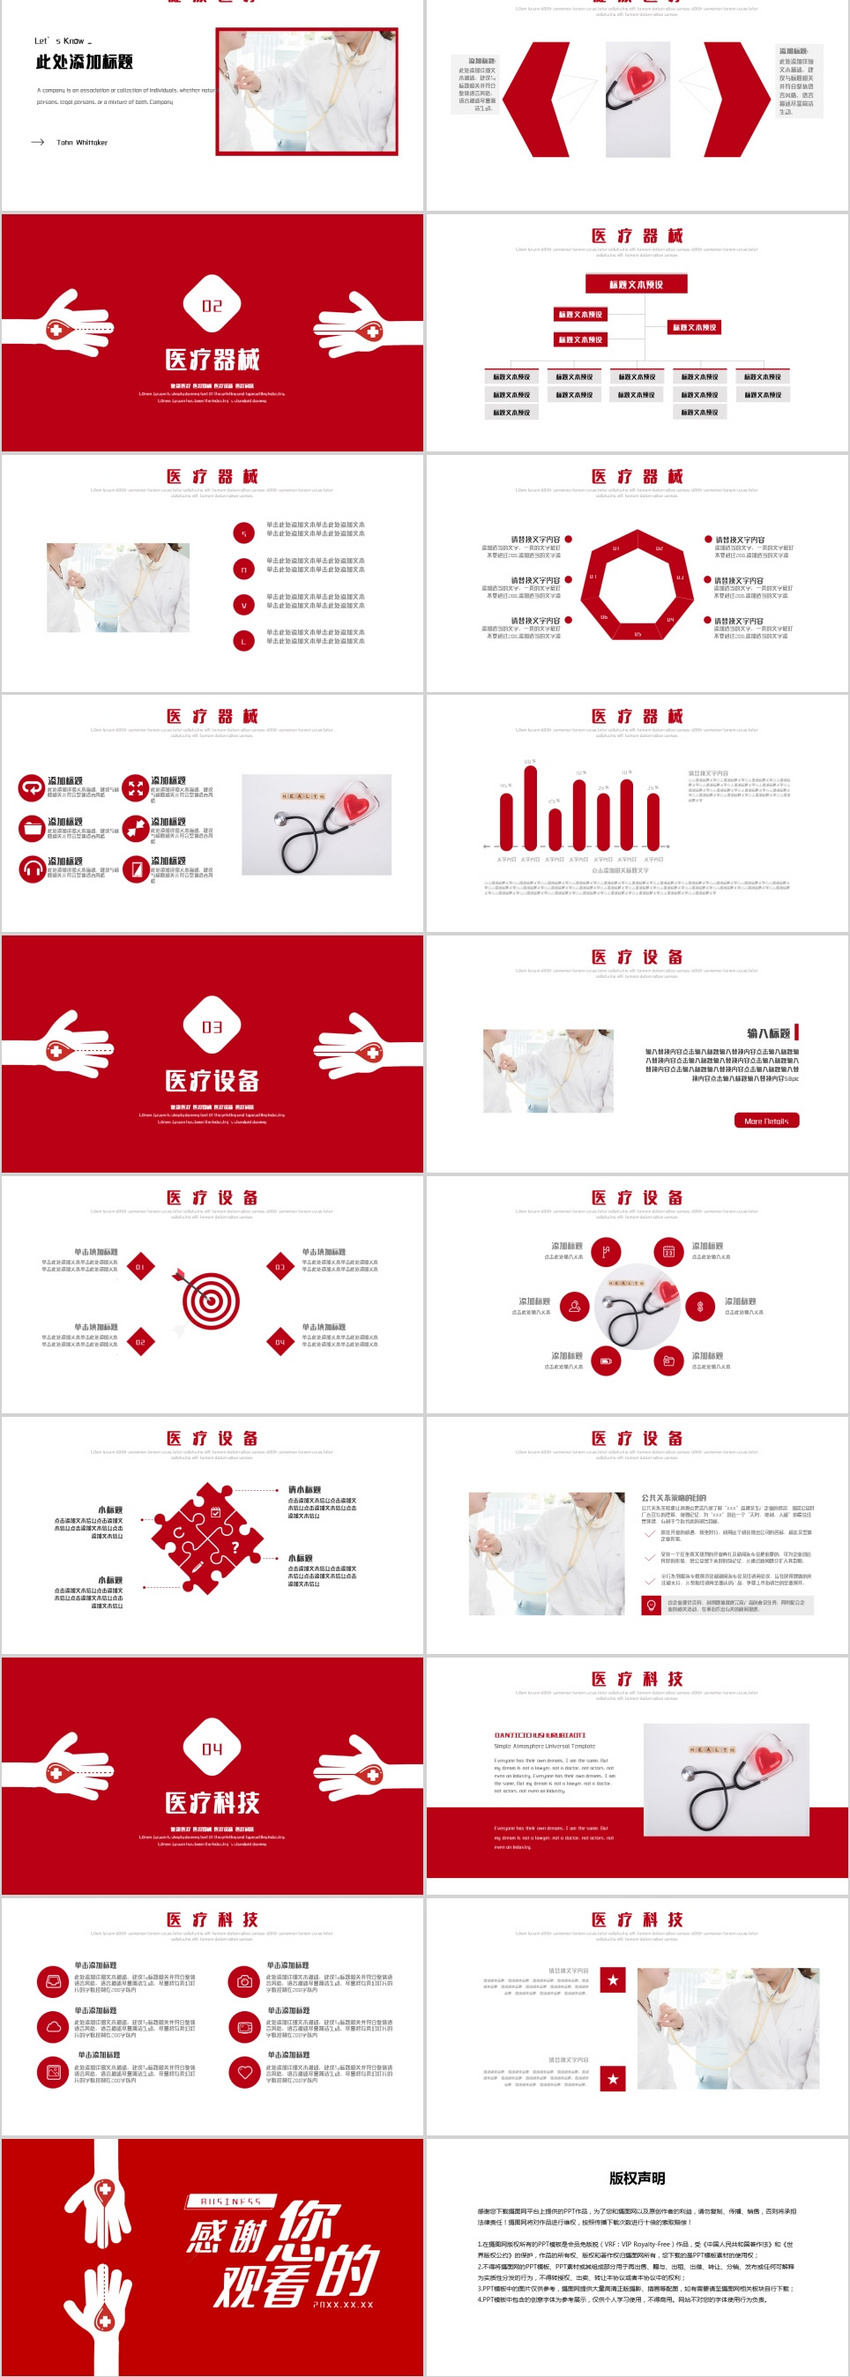 Mẫu PowerPoint y tế đỏ: Nếu bạn làm việc trong lĩnh vực y tế, mẫu PowerPoint đỏ này chắc chắn là một lựa chọn tuyệt vời cho bạn. Với thiết kế và màu sắc chuyên nghiệp, mẫu PowerPoint này sẽ giúp bạn tạo ra những bài thuyết trình độc đáo và hấp dẫn, thu hút sự chú ý của mọi người.